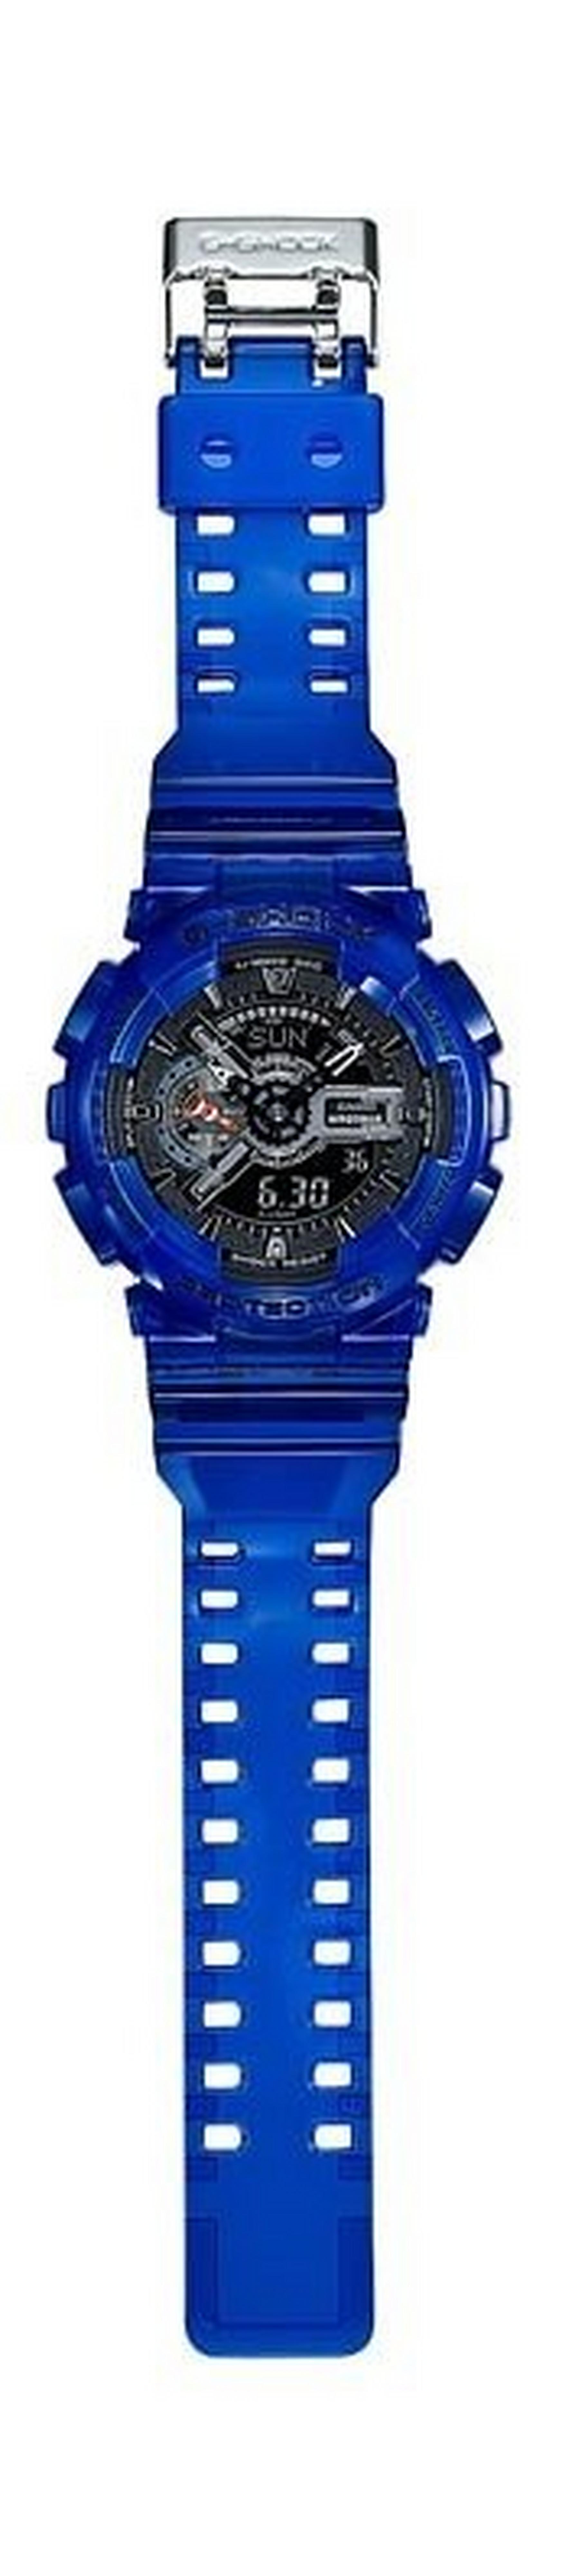 Casio G-Shock Blue Band Sport Watch (GA-110CR-2ADR)